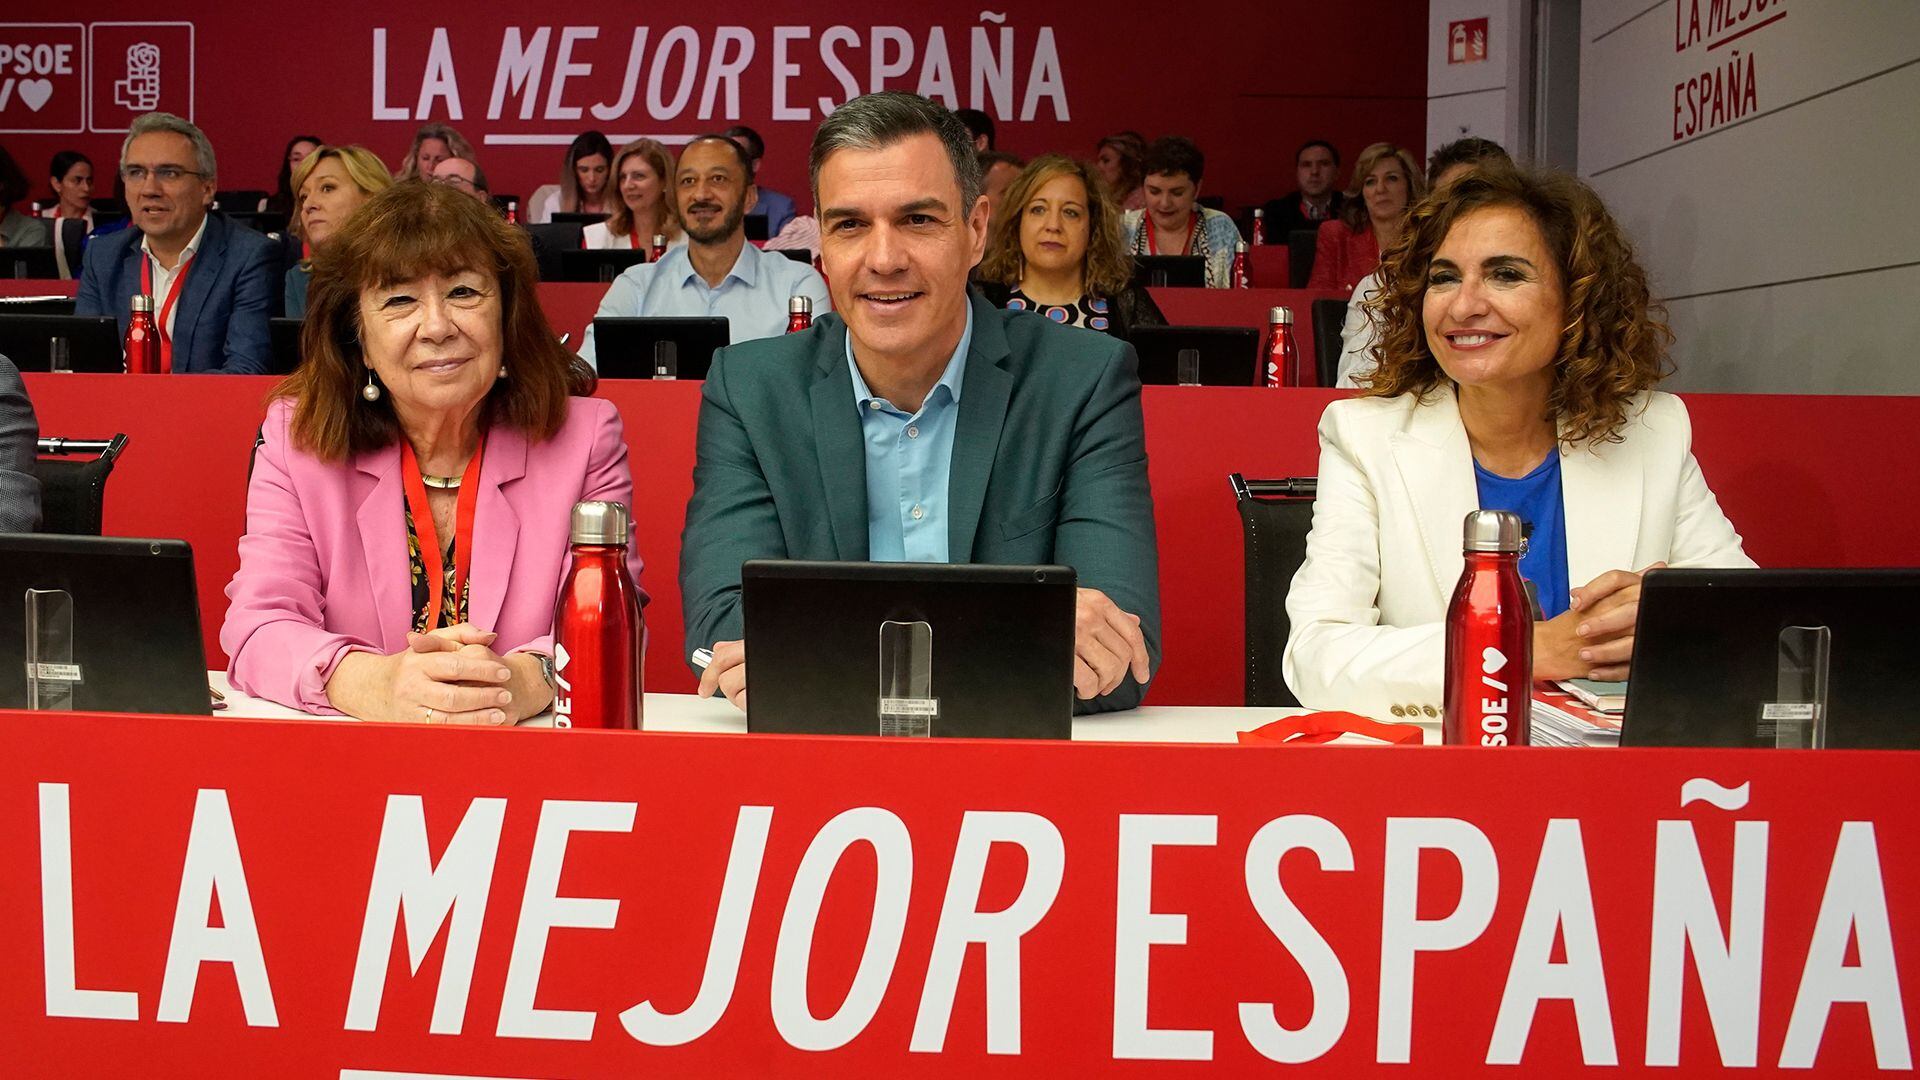 Ampliación | Sánchez reivindica sin matices su Gobierno e insta al PSOE a no rendirse: “La victoria es posible”